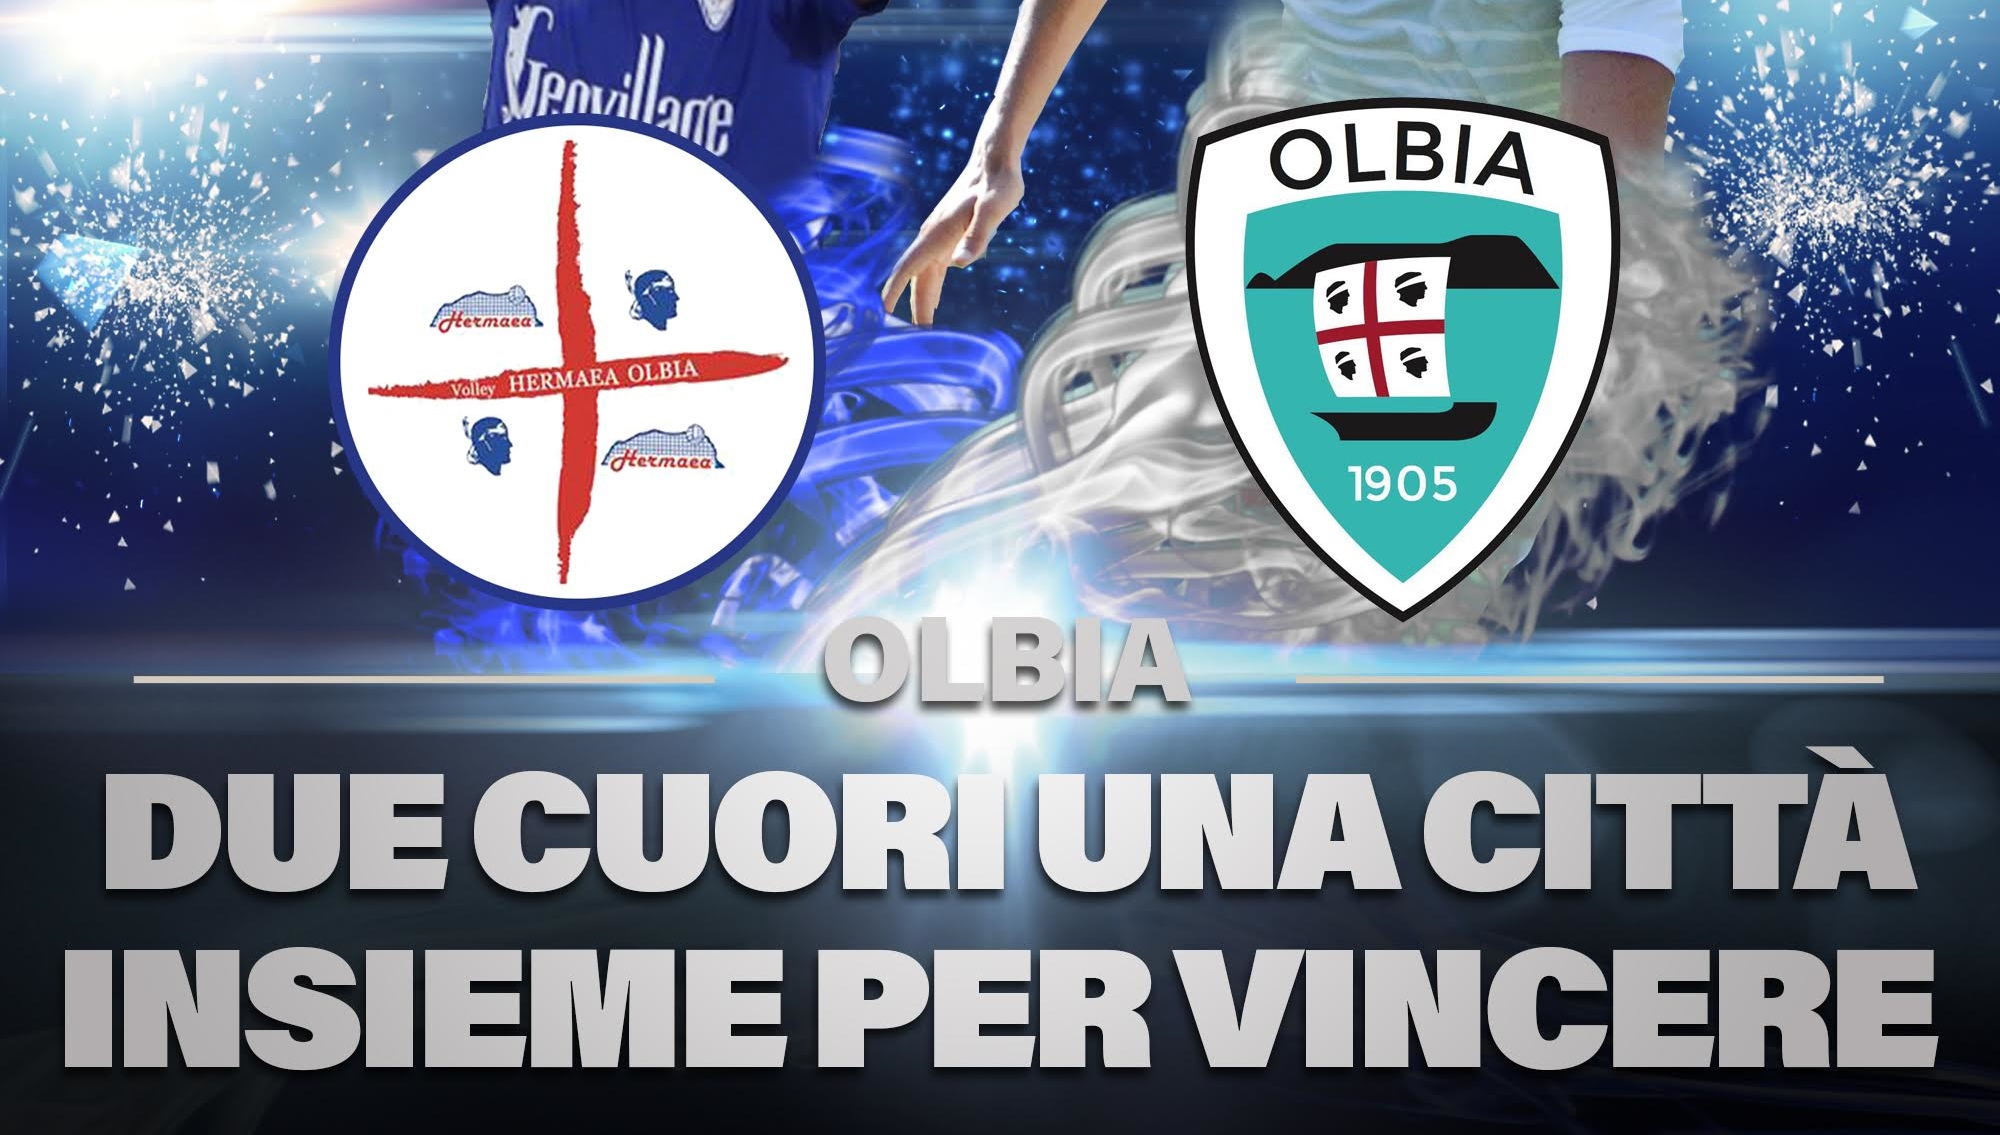 Partnership Olbia Calcio-Pallavolo Hermaea: premiati gli abbonati